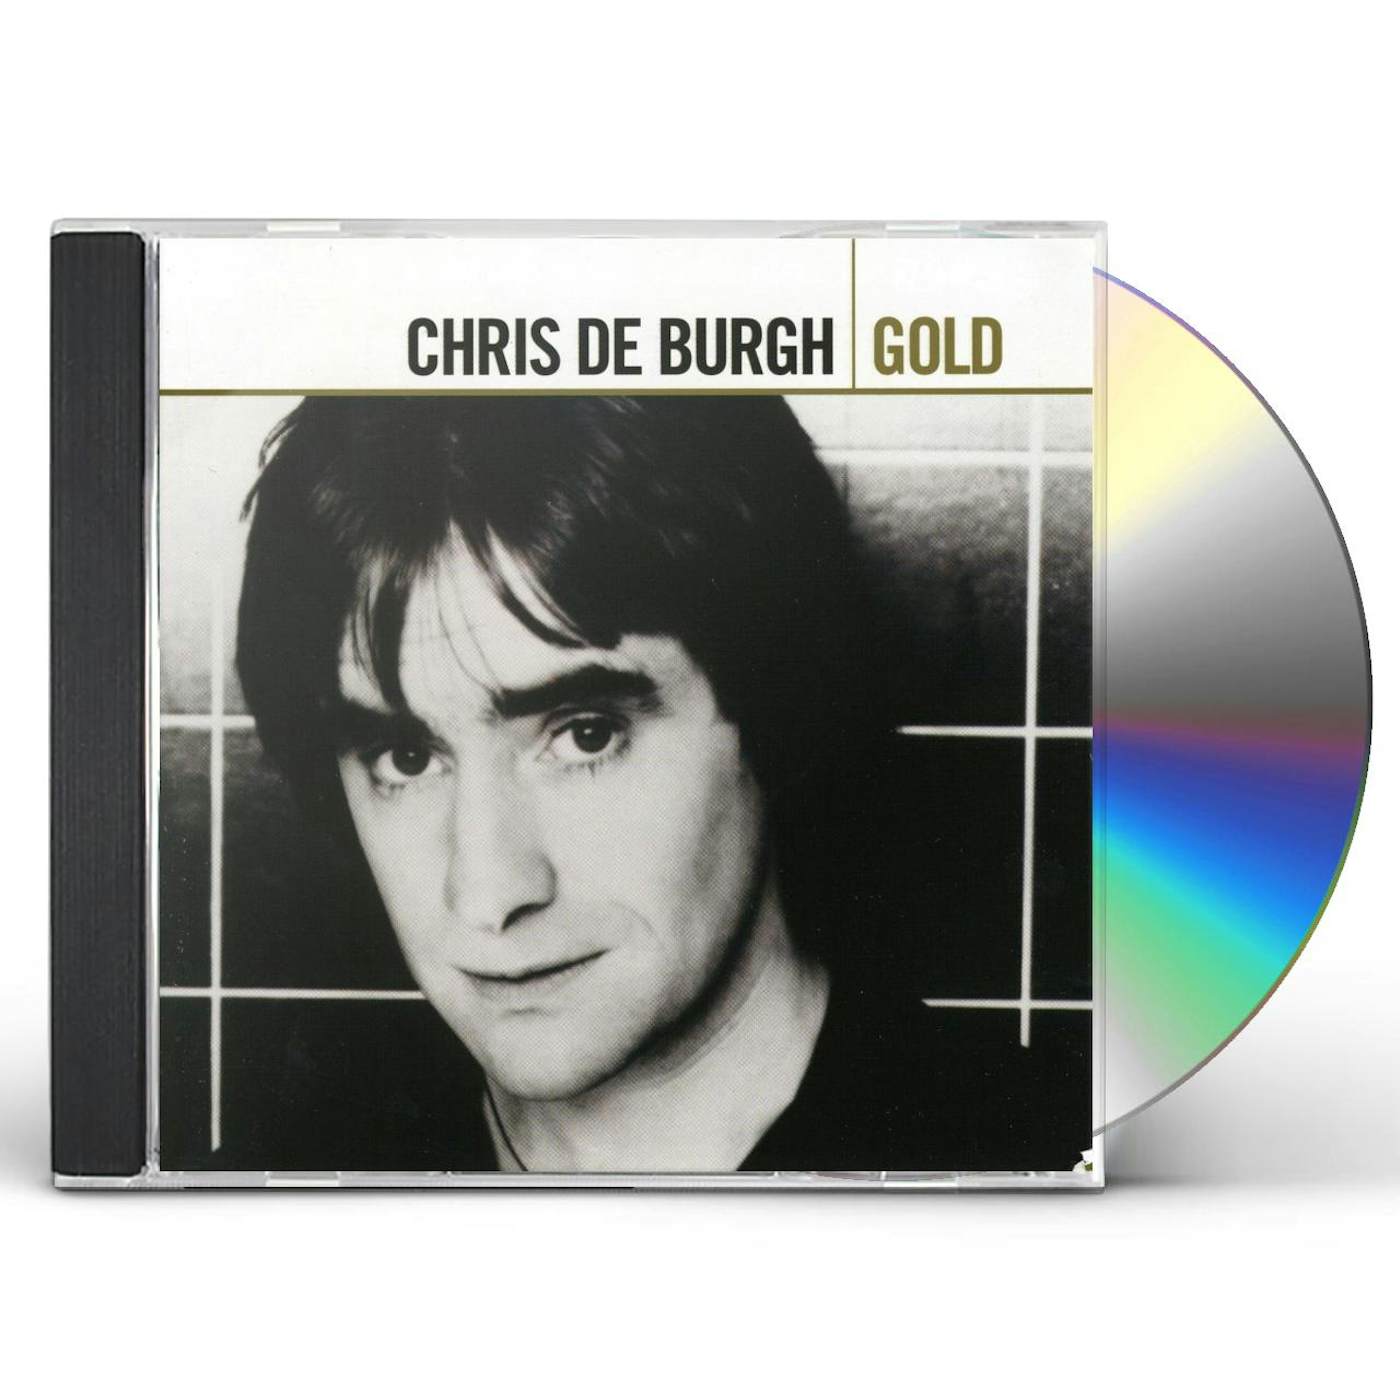 Chris de Burgh GOLD CD